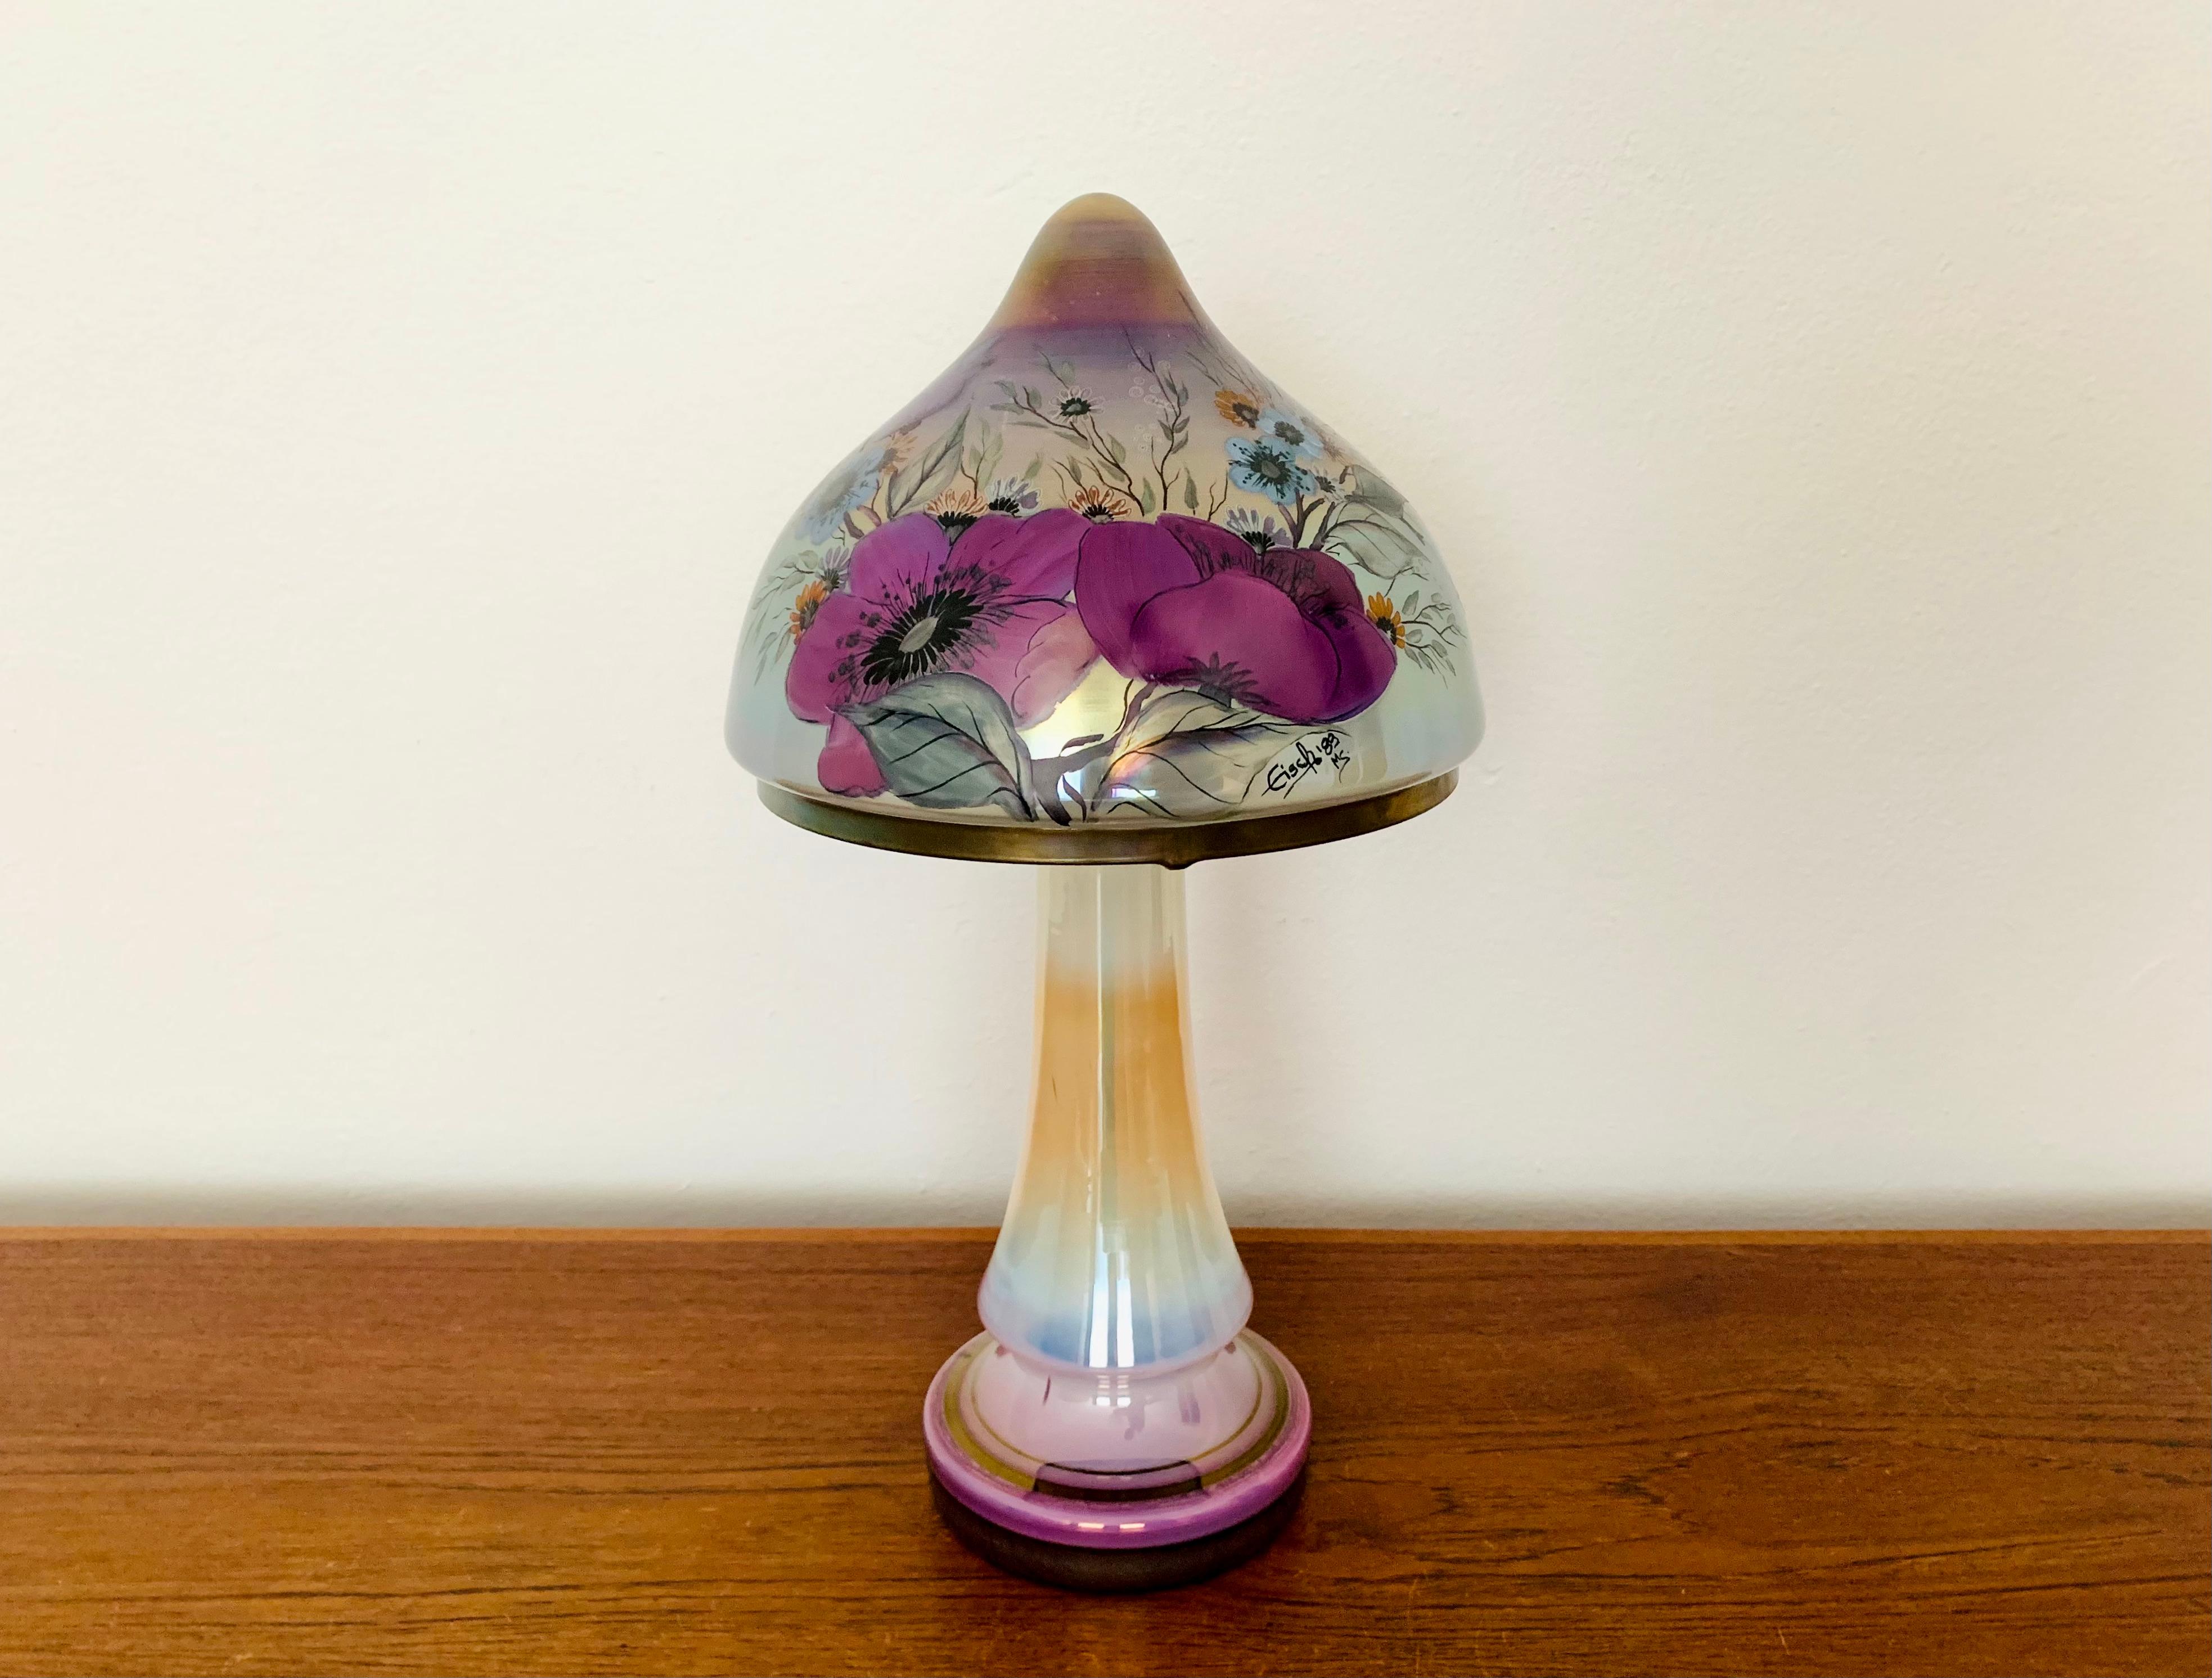 Très belle lampe de table en verre peinte à la main, de haute qualité, datant des années 1980.
La lampe est très noble et constitue un objet de design très particulier.
Le verre et la peinture colorée créent une lumière très agréable.

Condit